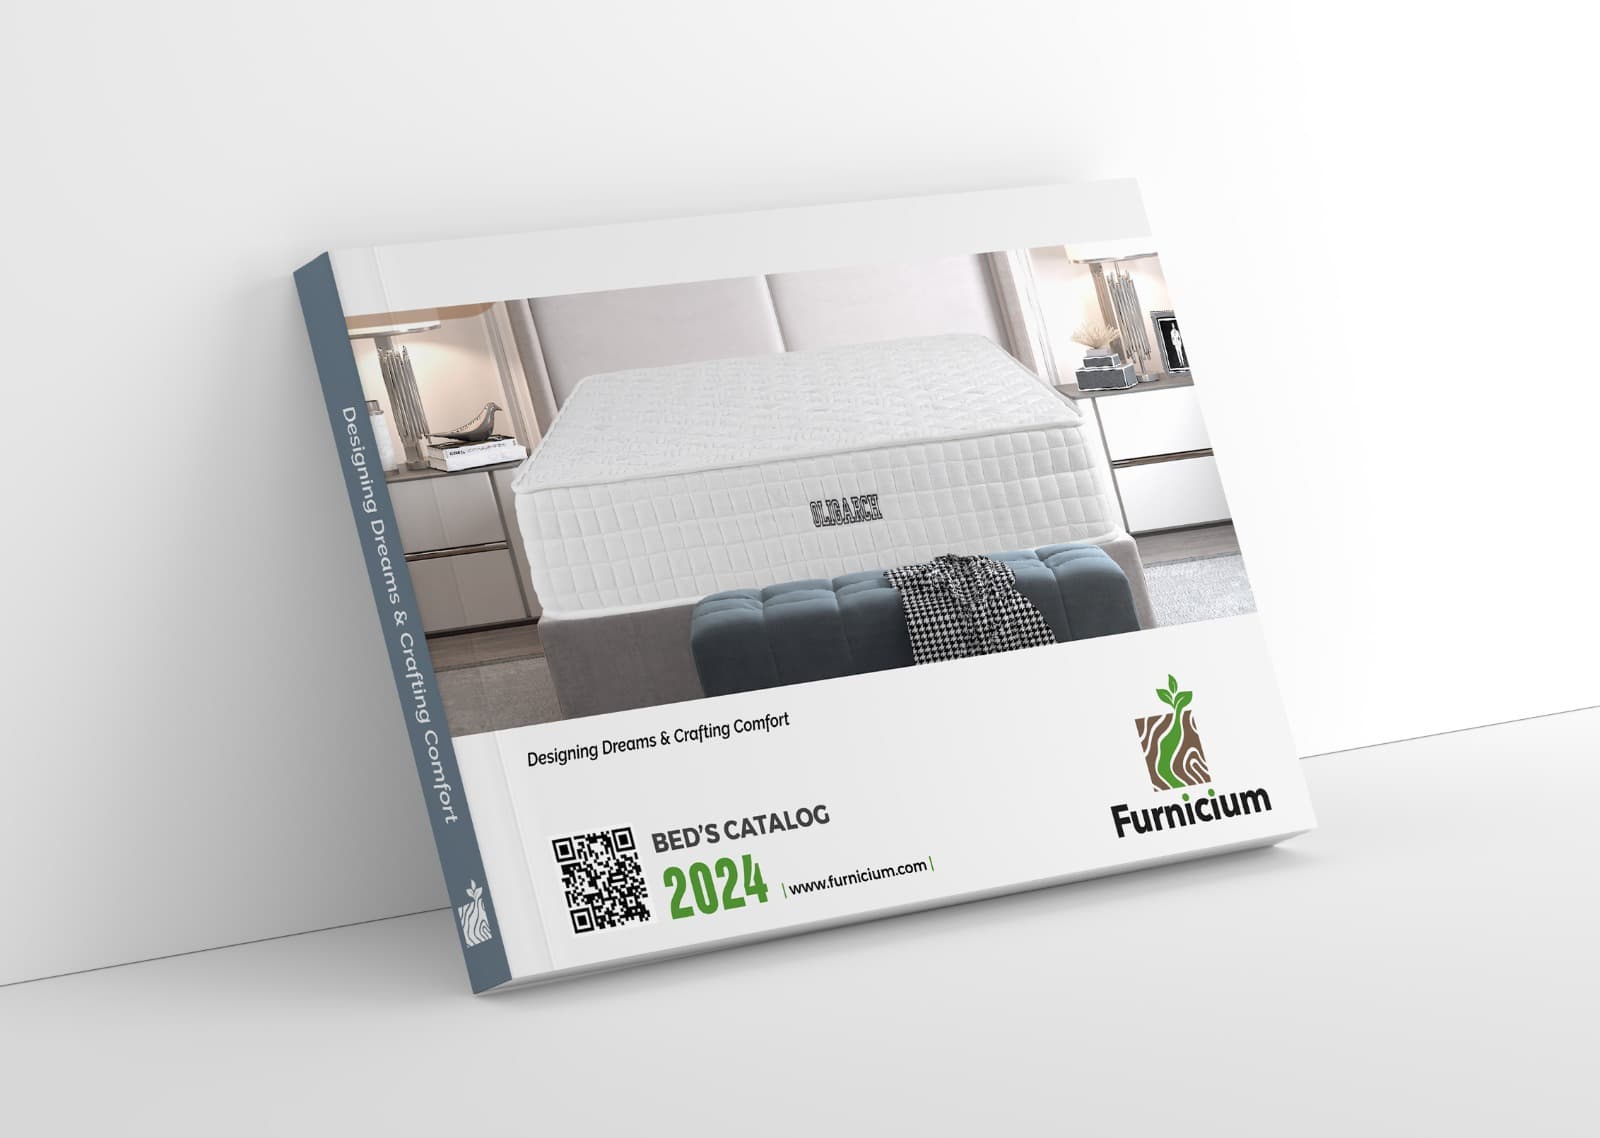 Furnicium-Bedroom-Catalog-A